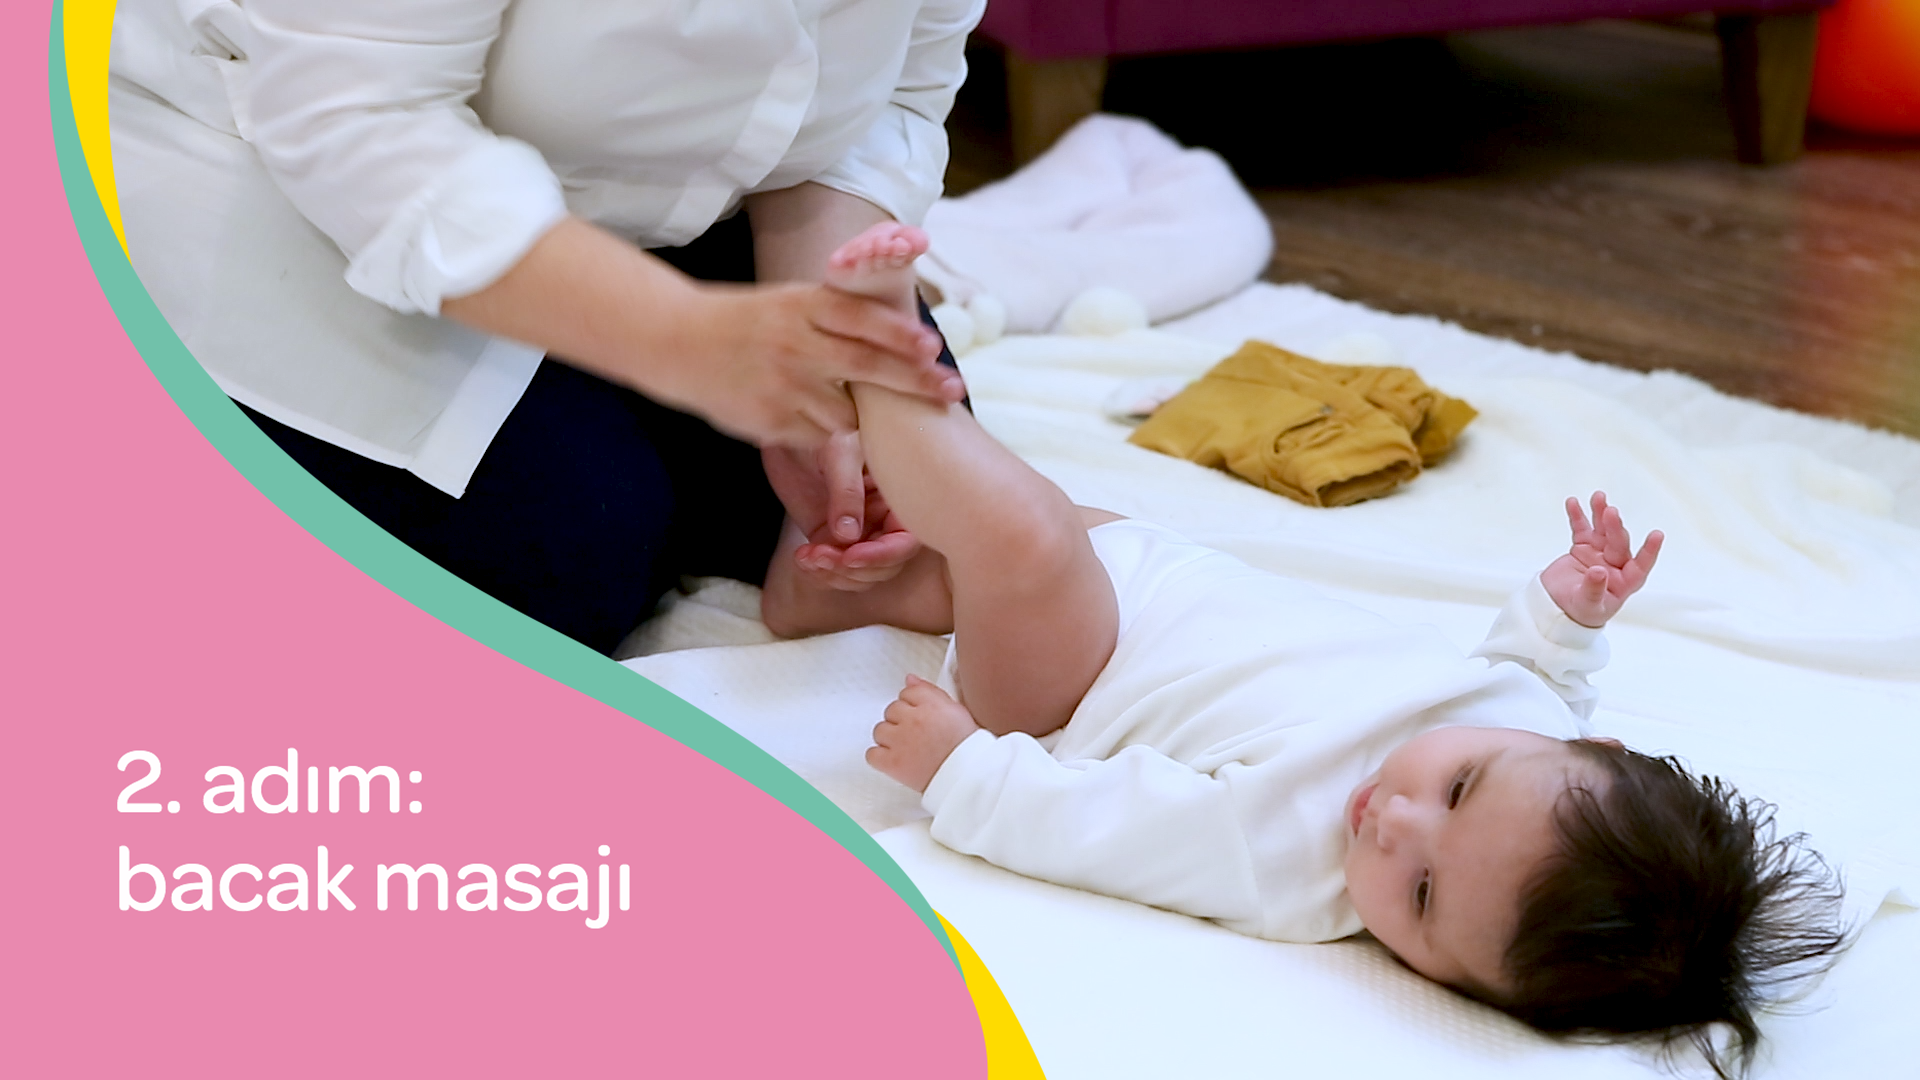 bebek masajı nasıl yapılır? – ikinci adım bacak masajı